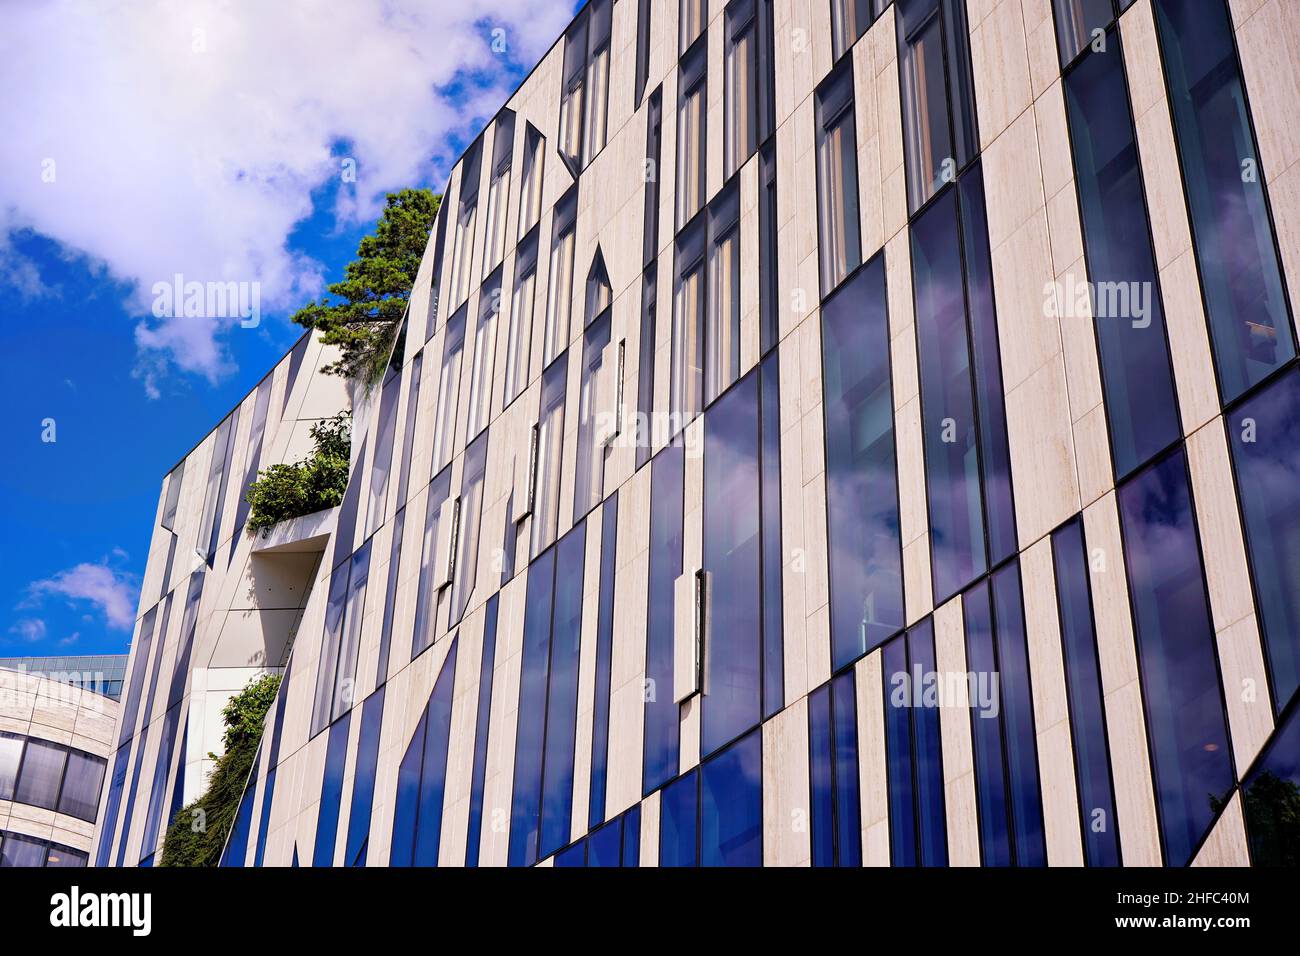 Bâtiment moderne durable Düsseldorf 'Kö-Bogen' conçu par l'architecte de renom de New York Daniel Libeskind, avec des plantes dans la façade. Banque D'Images